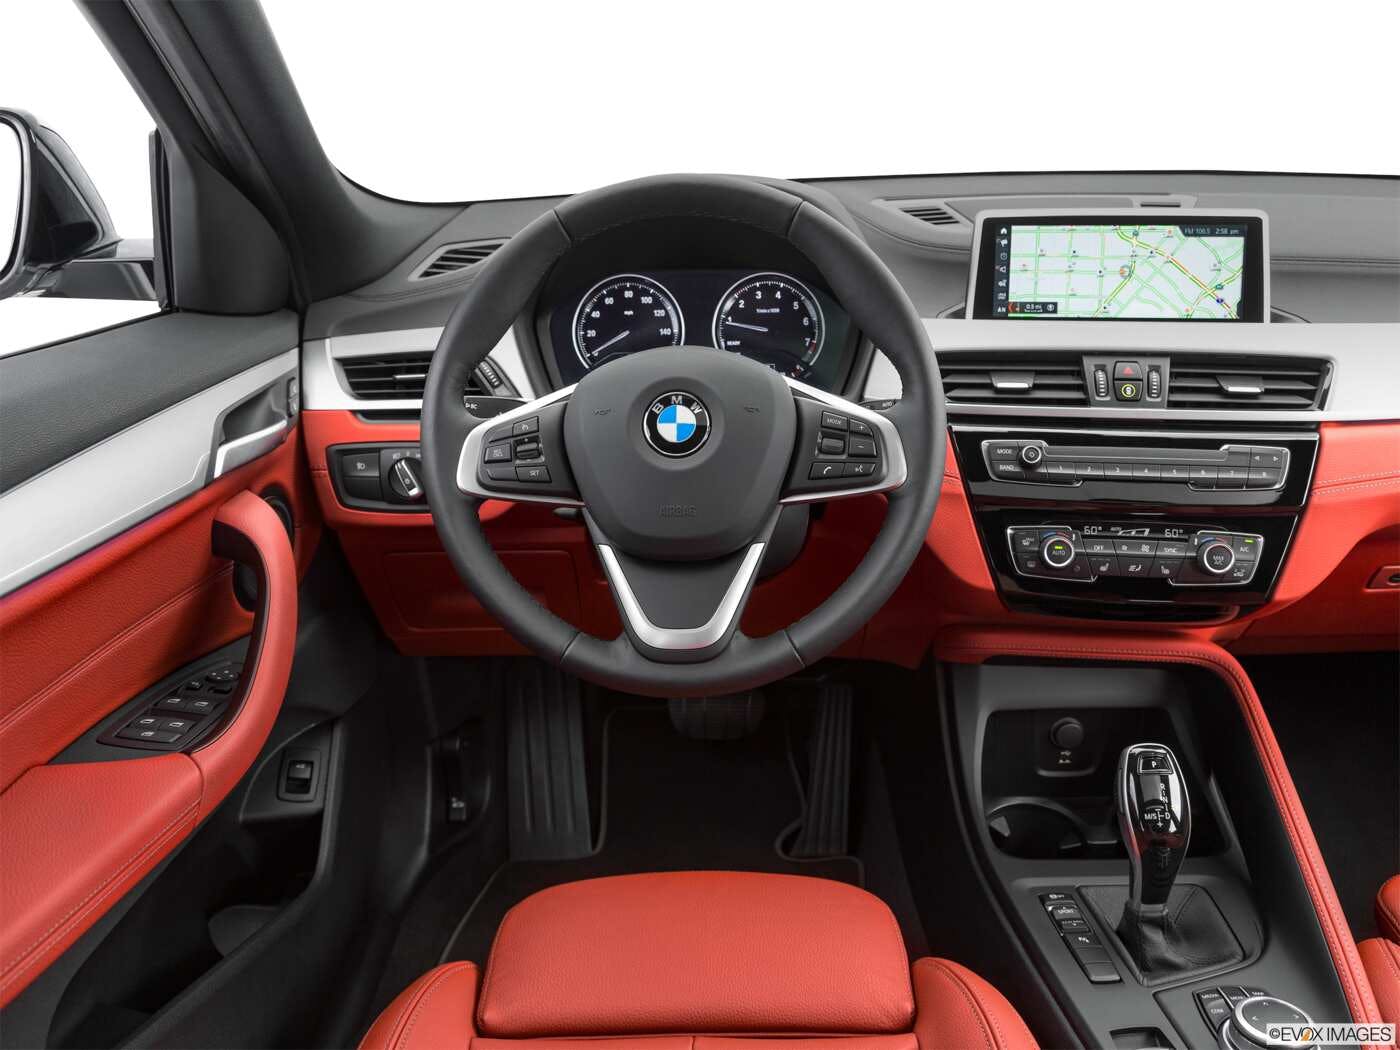 2021 BMW X2 Review  Pricing, Trims & Photos - TrueCar